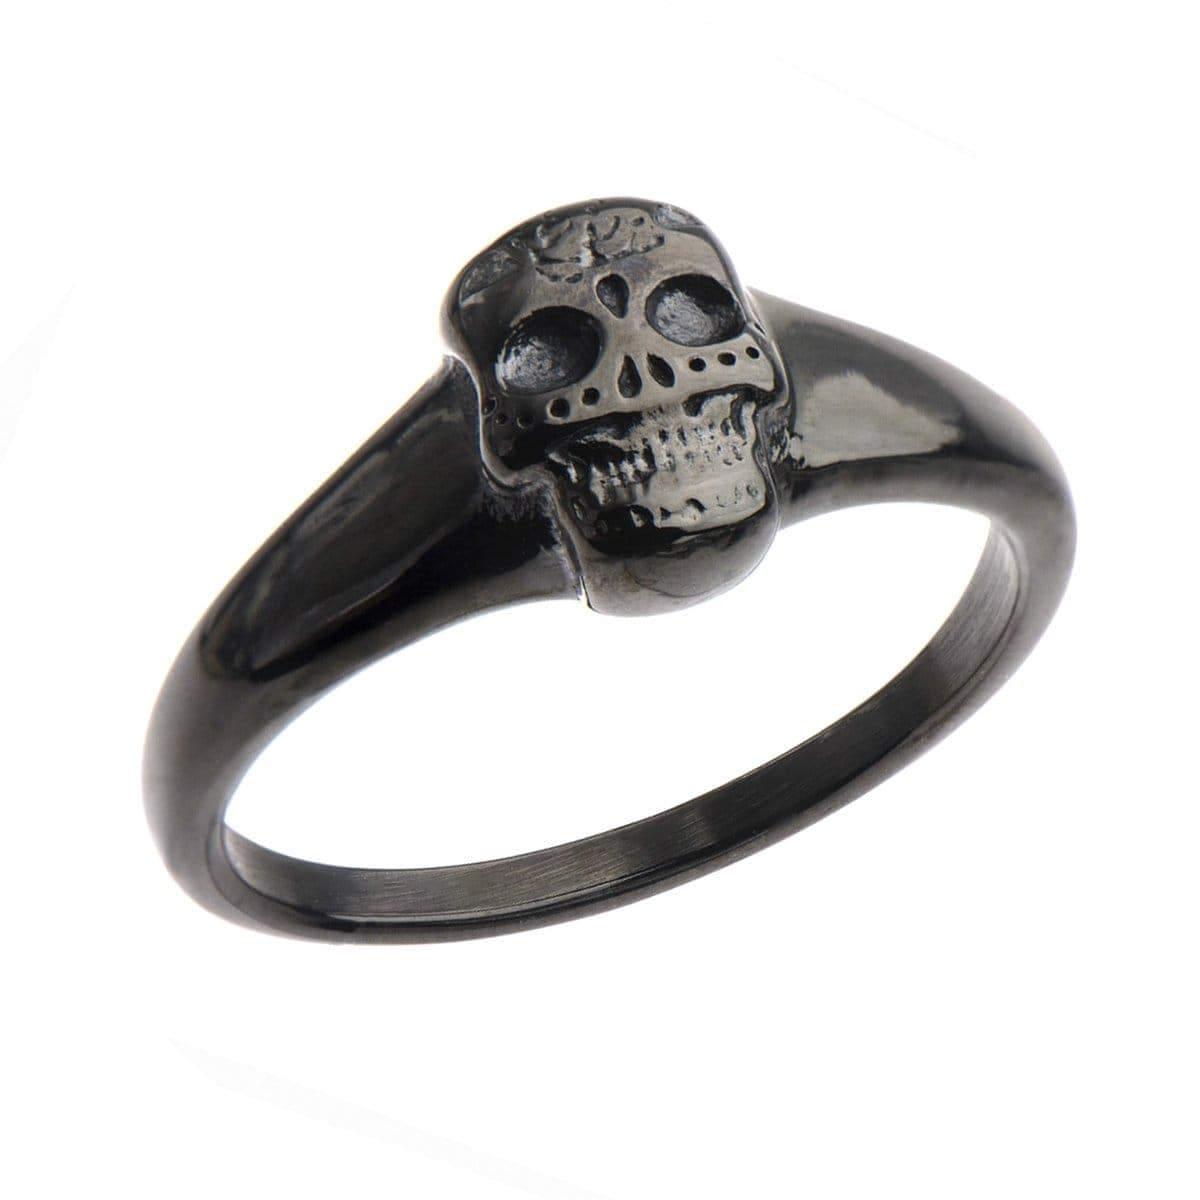 INOX JEWELRY Rings Black Stainless Steel Sugar Skull Ring